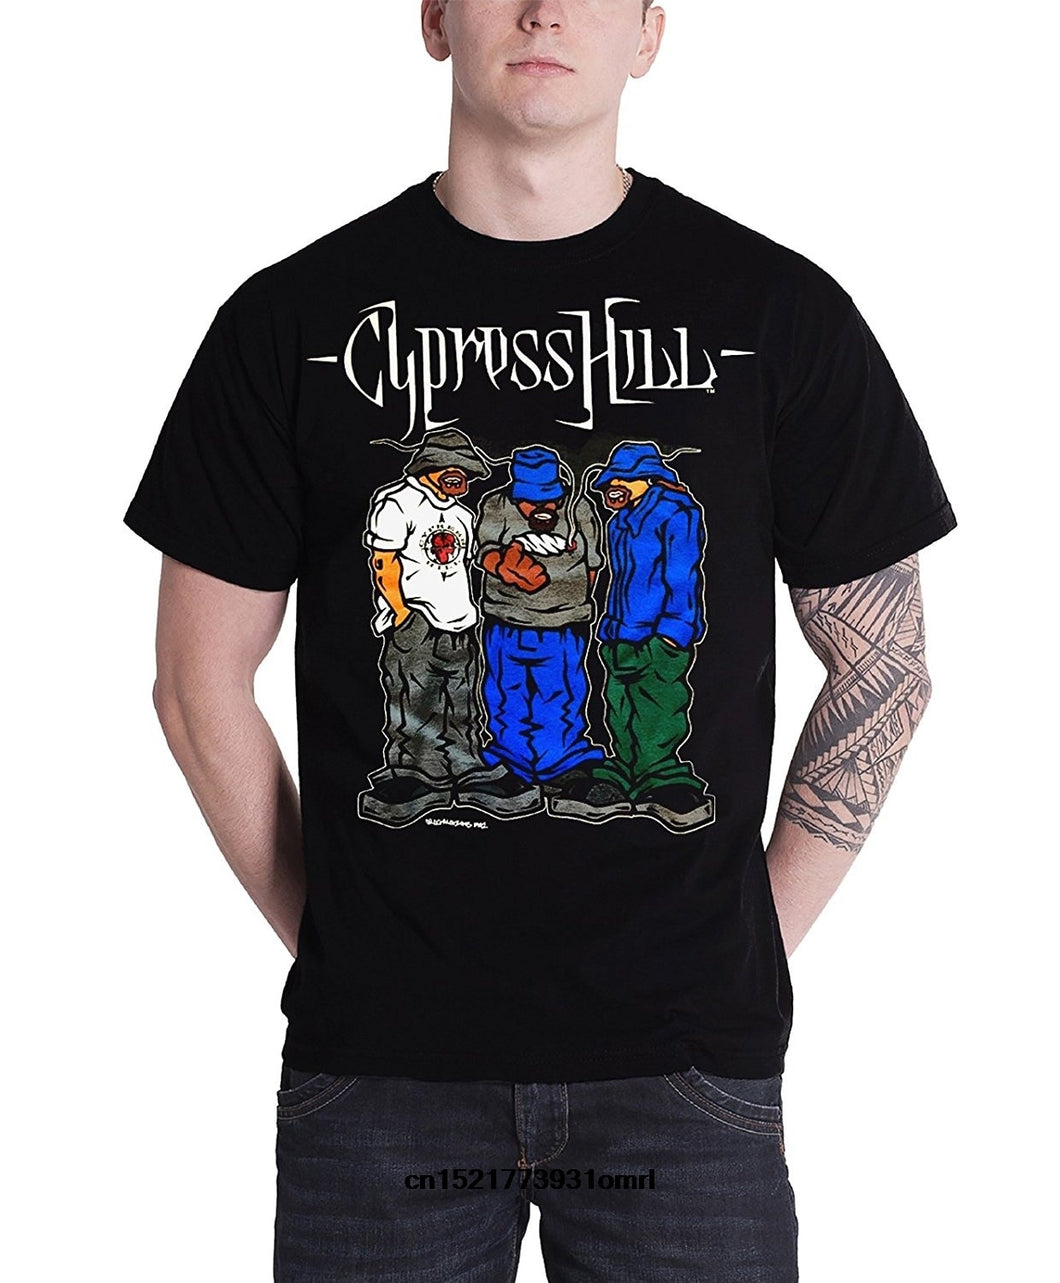 Cypress Hill Graffiti Boys T-Shirt XanacityToronto